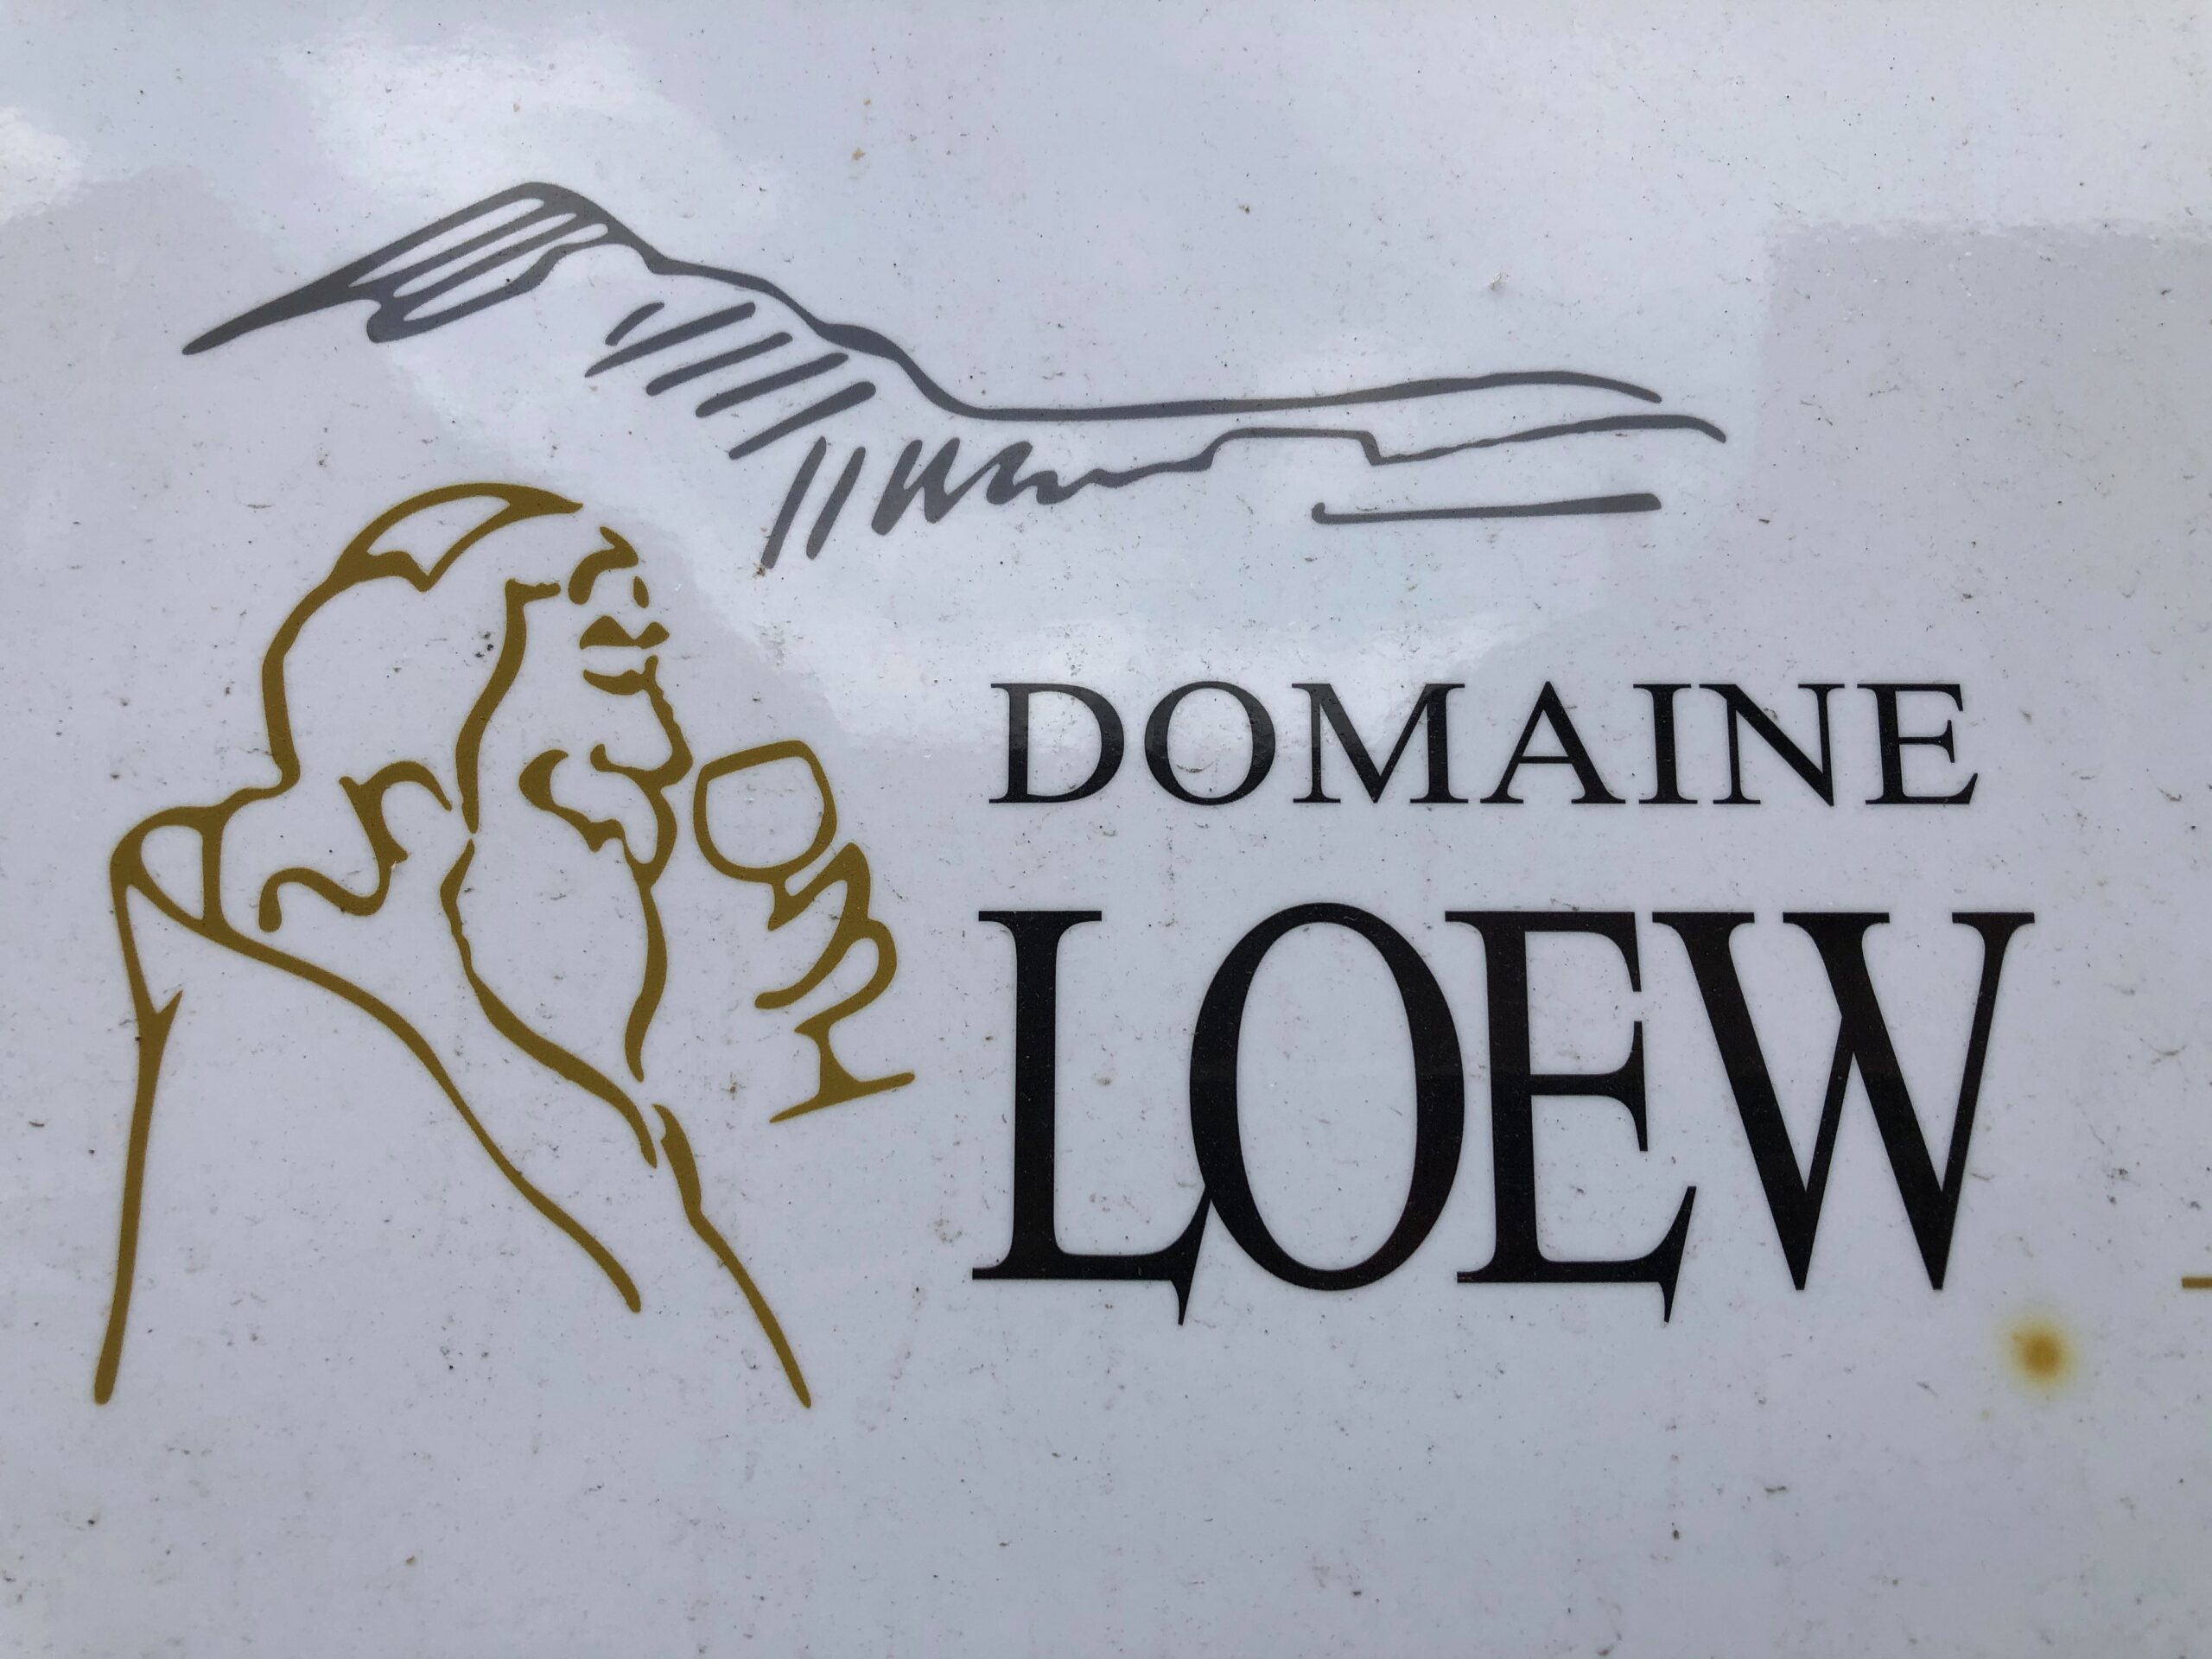 Domaine Loew